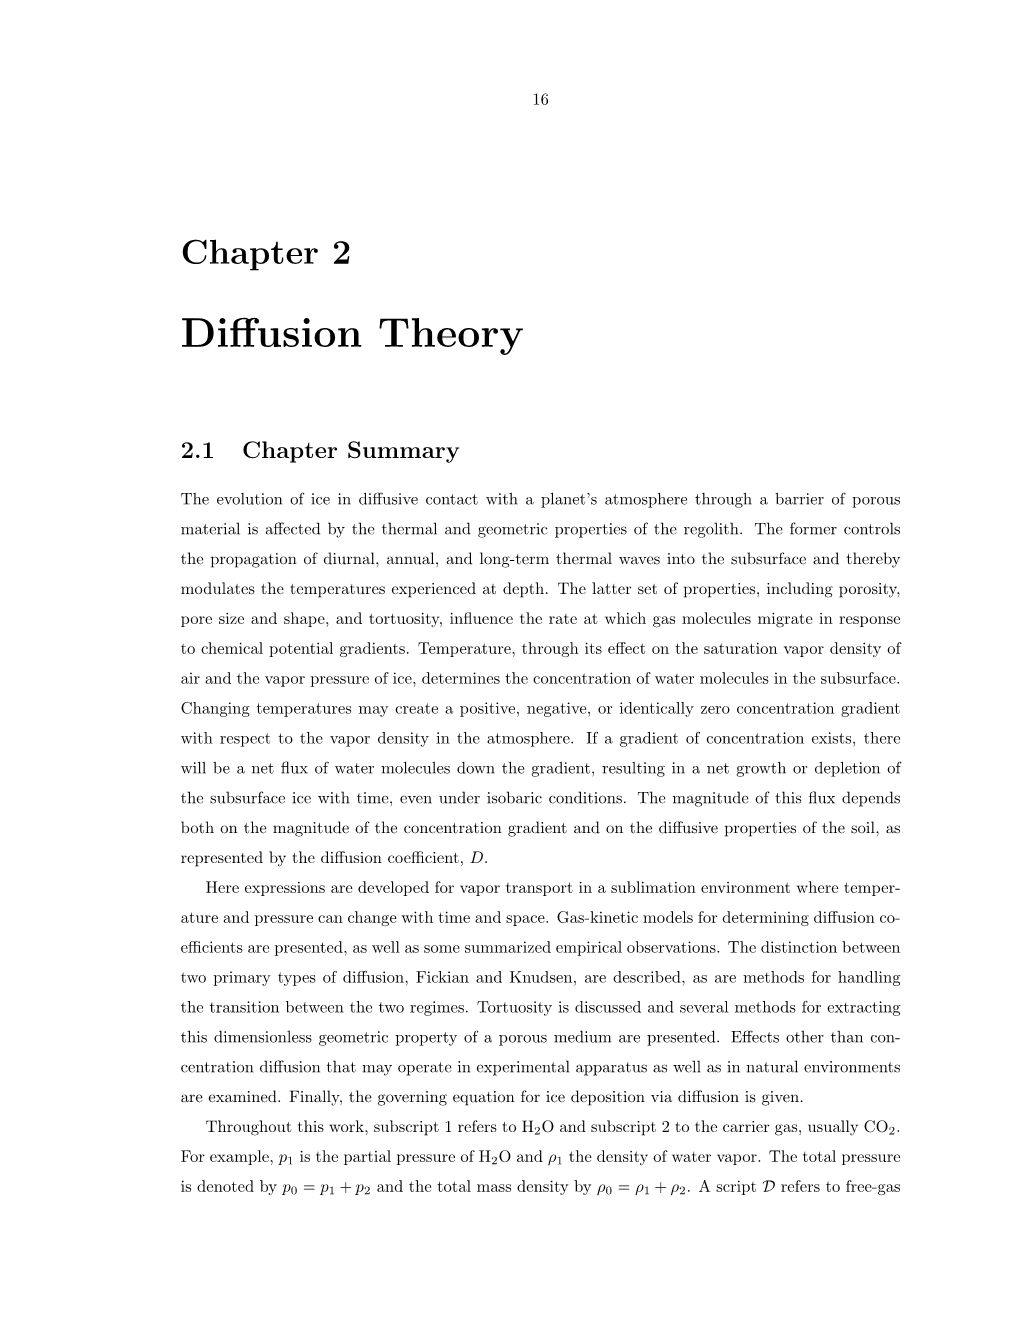 Diffusion Theory